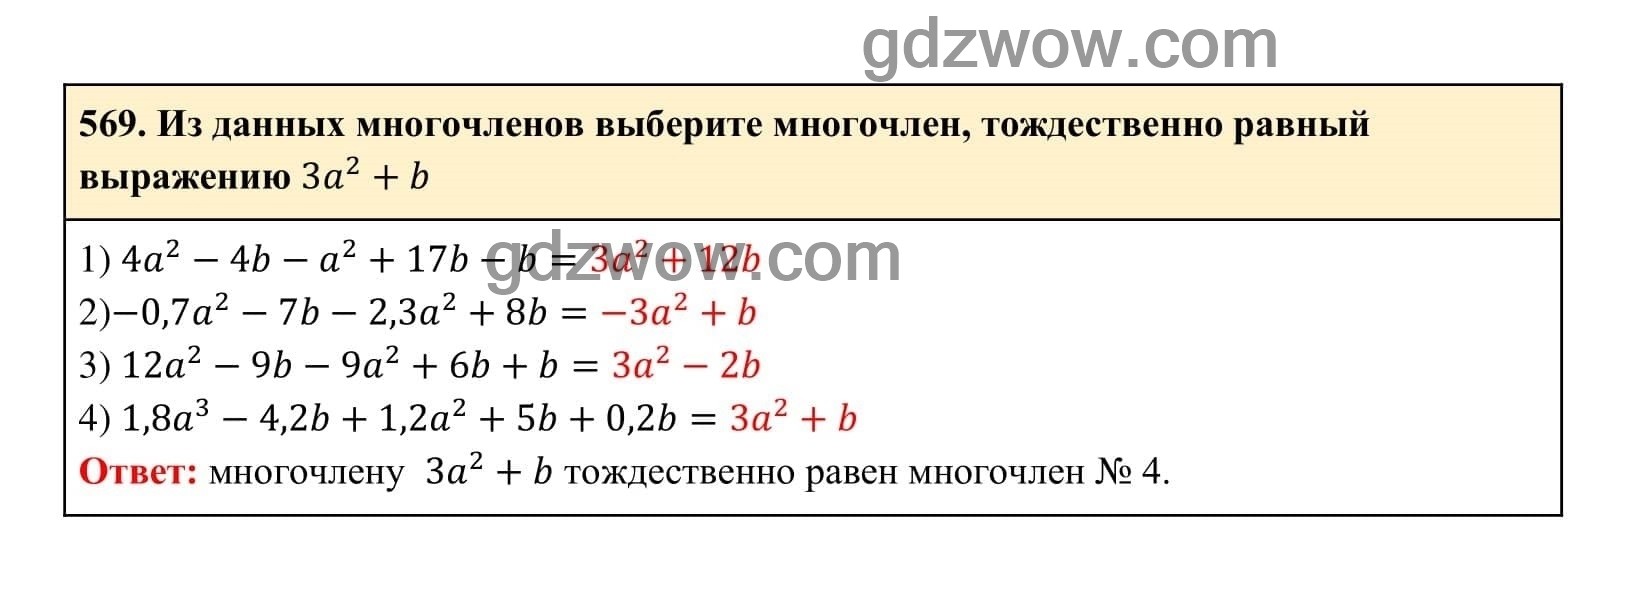 Упражнение 569 - ГДЗ по Алгебре 7 класс Учебник Макарычев (решебник) - GDZwow